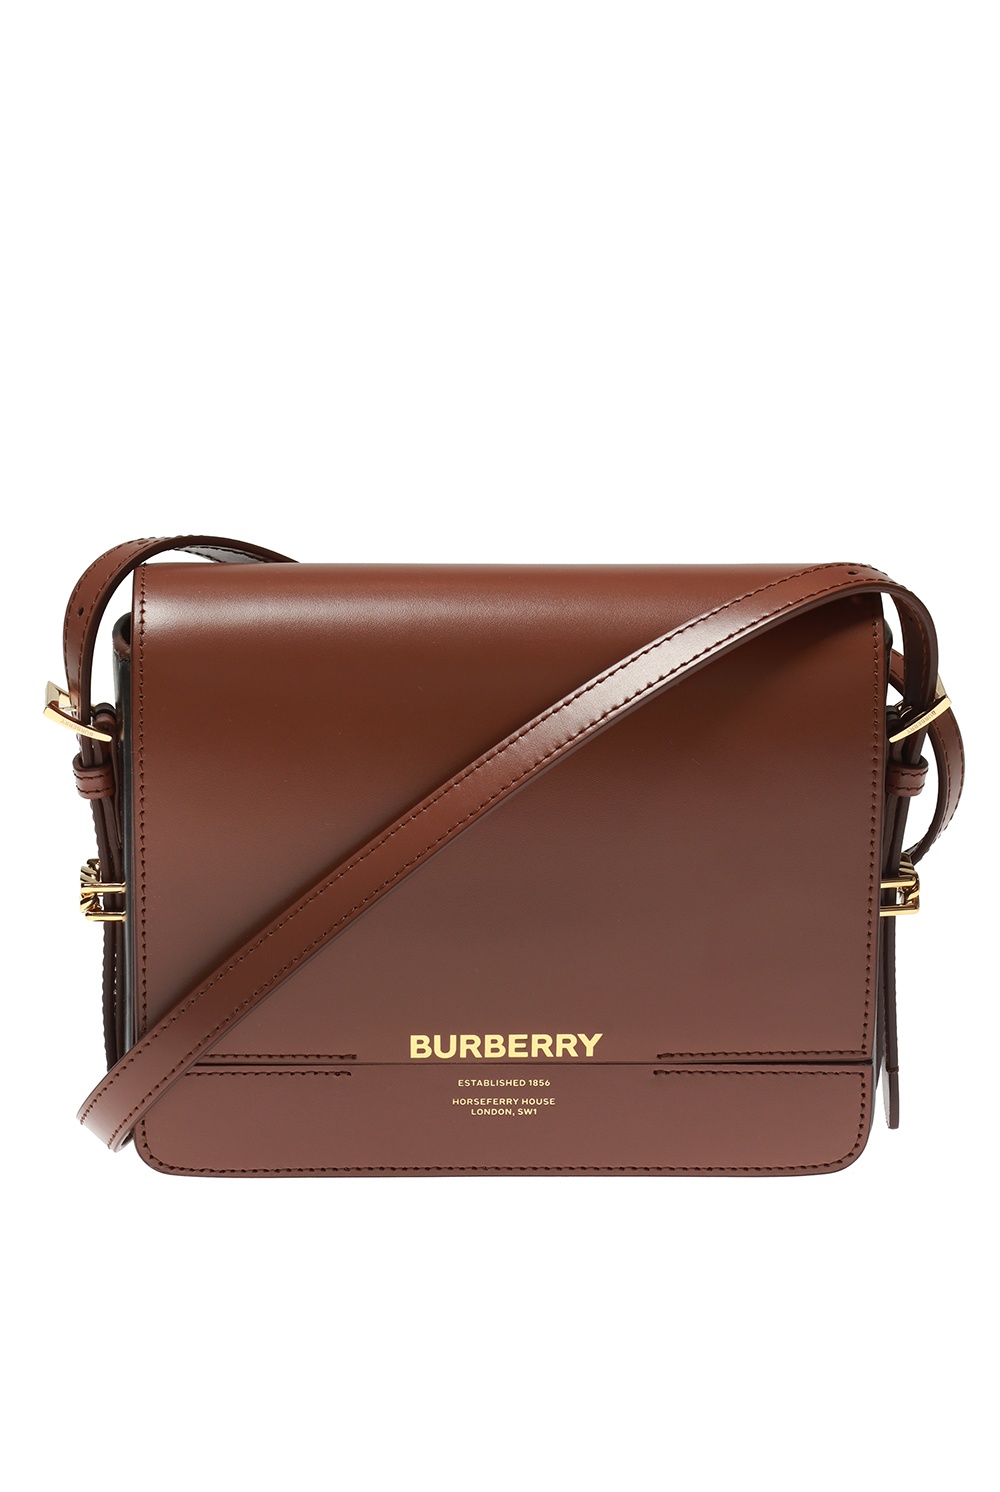 Burberry Vintage Check Messenger Bag Archive Beige/Black